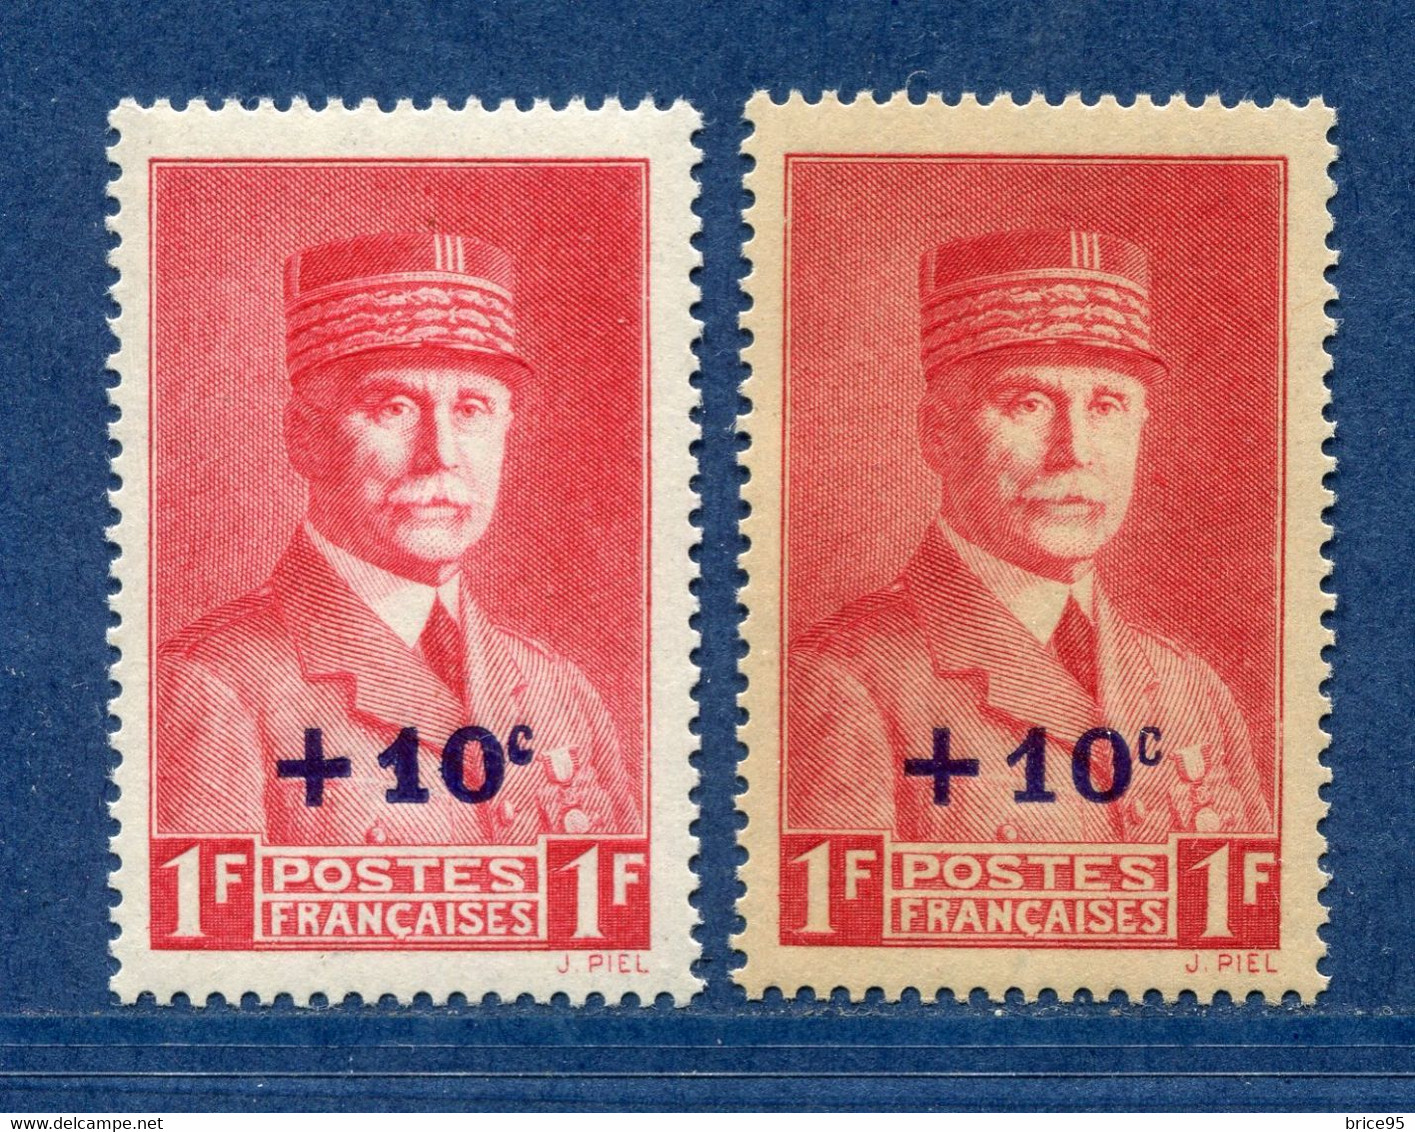 ⭐ France - Variété - YT N° 494 - Couleurs - Pétouille - Neuf Sans Charnière - 1941 ⭐ - Unused Stamps